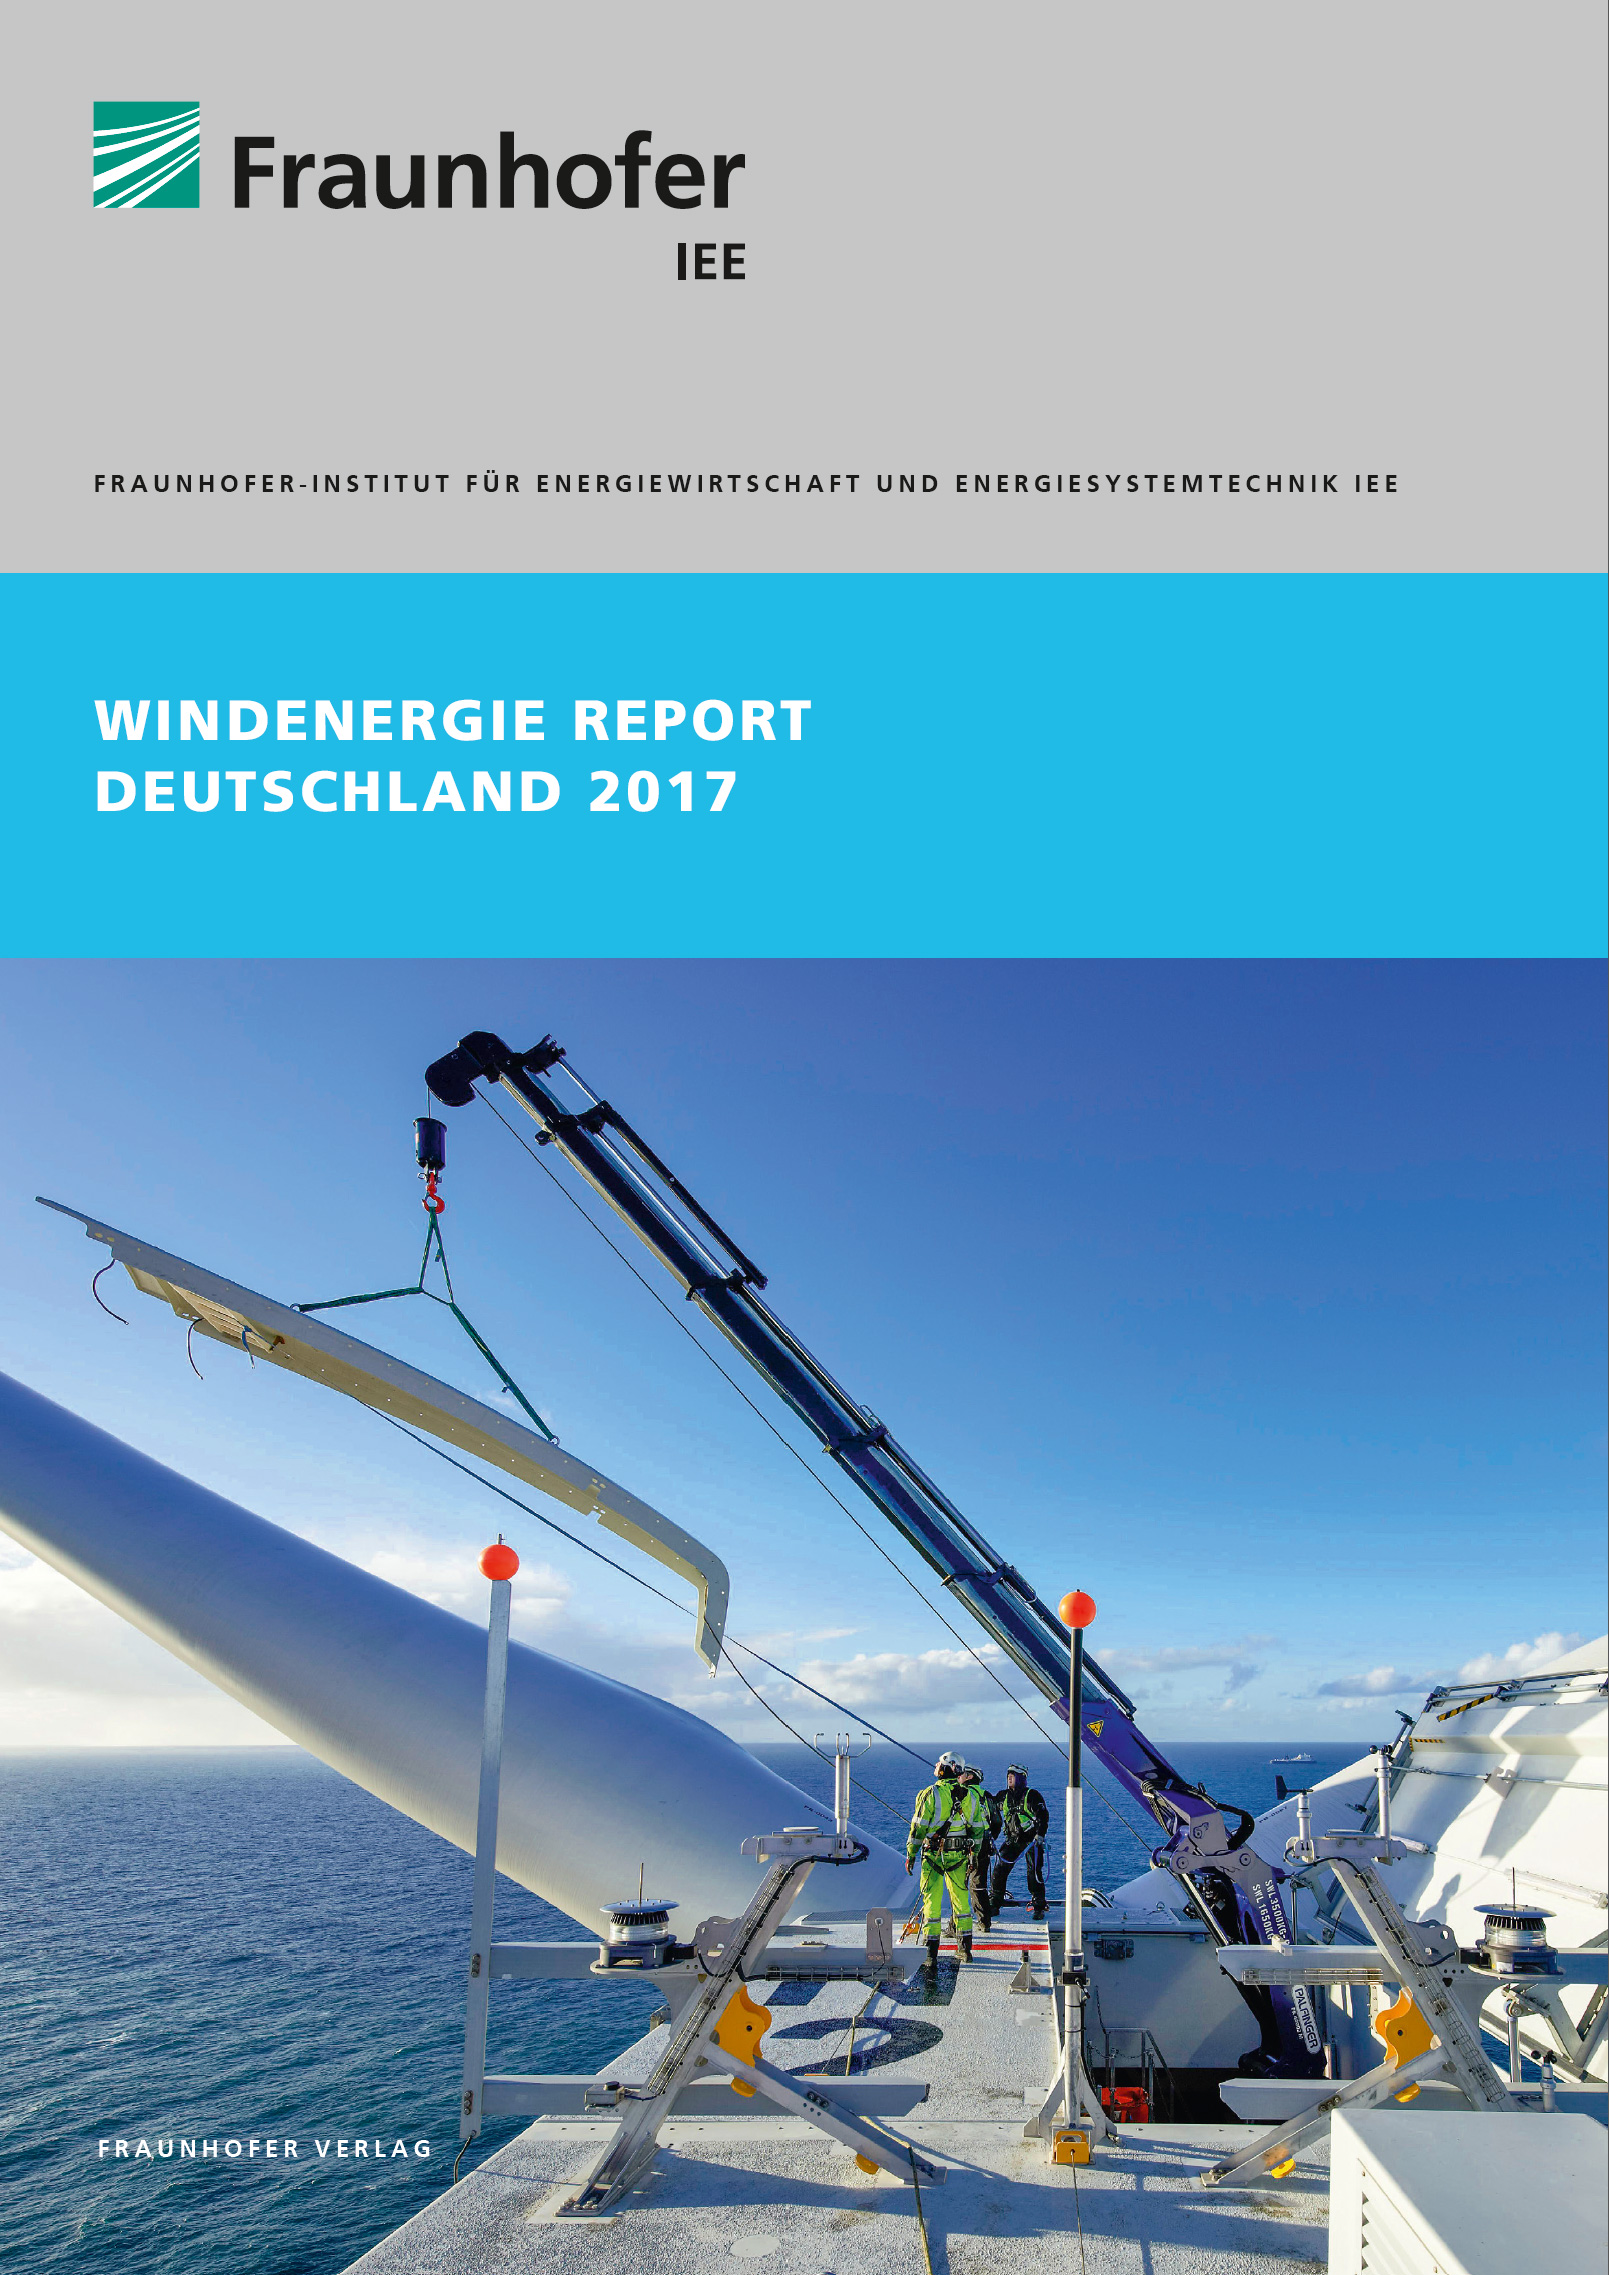 Titelbild des Windenergie Reports Deutschland 2017 